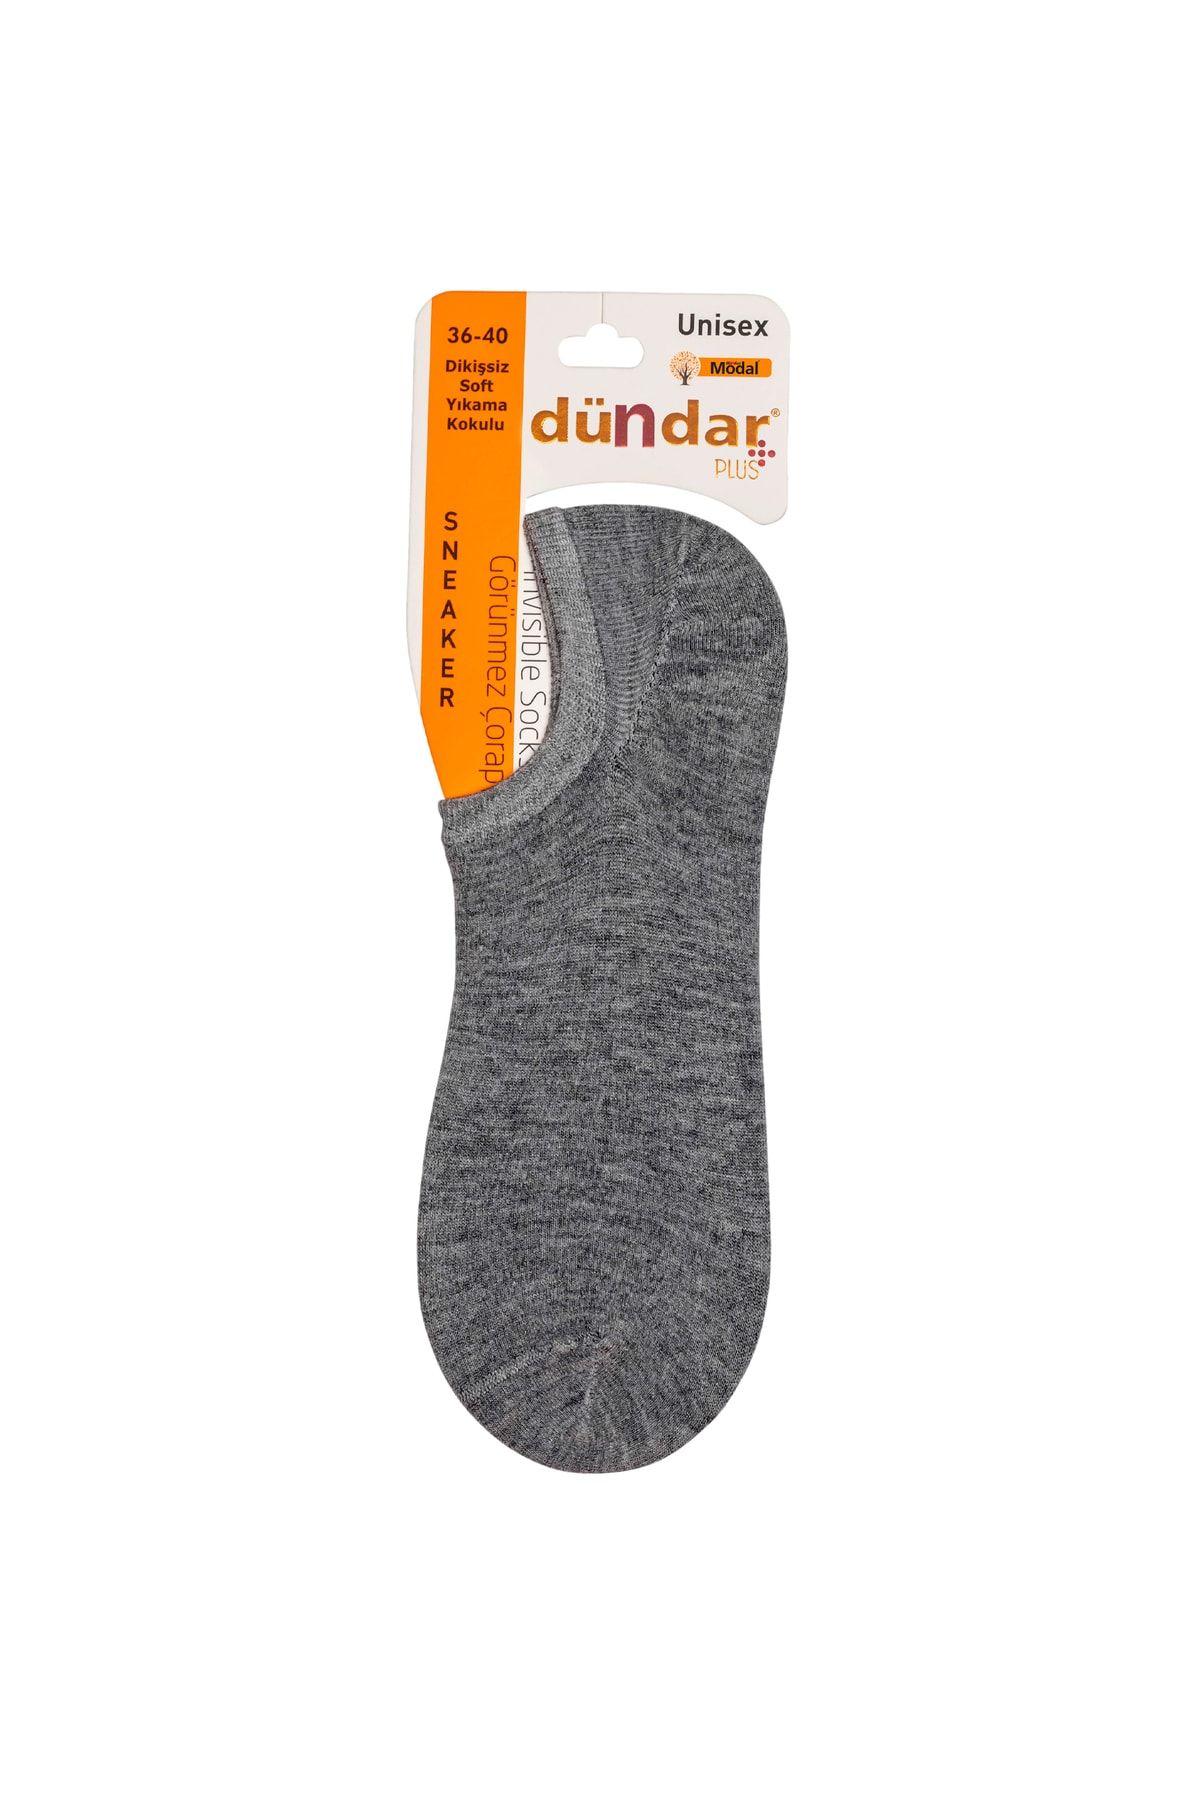 Dündar Unisex Gri Modal 6'lı Dikişsiz Sneaker Çorap